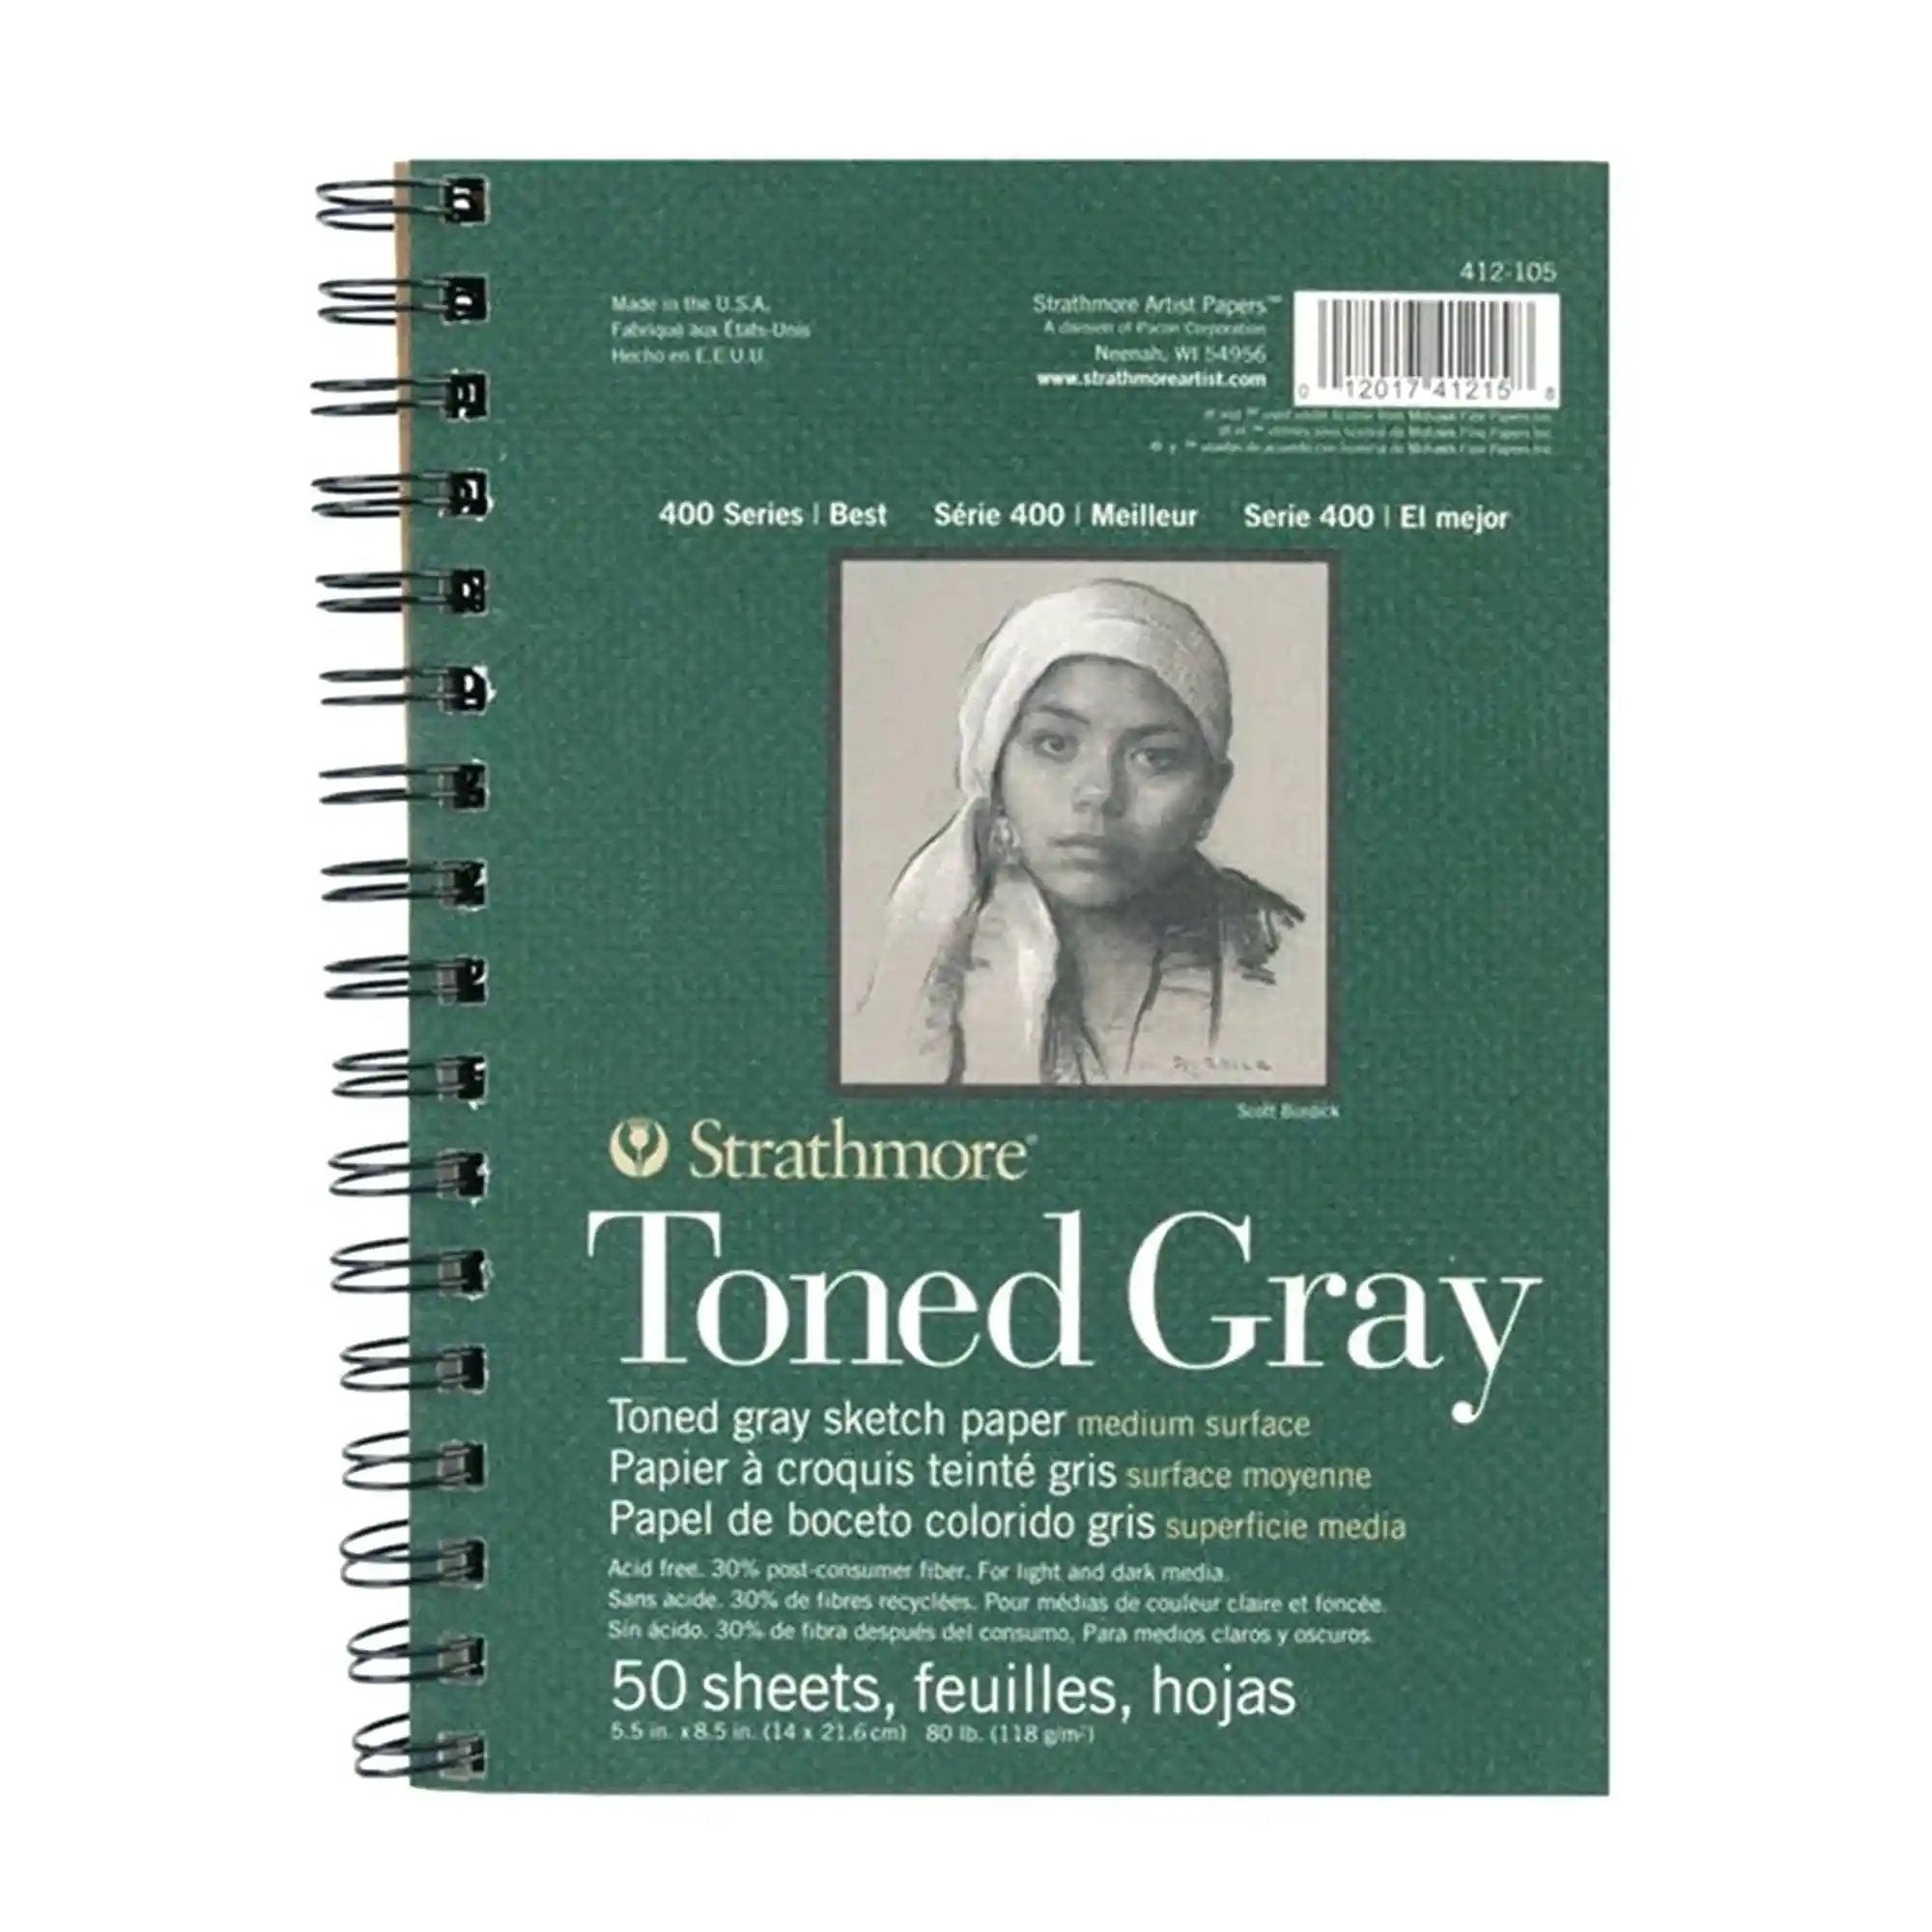 Artistica - colores para diseñadores y artistas - Sketchbook Toned Gray, 50  hojas tamaño A4, (118g/m2), marca Strathmore. Cuaderno de 50 hojas,  tamaño A4, sin ácido (118g/m2) , para que puedas dibujar